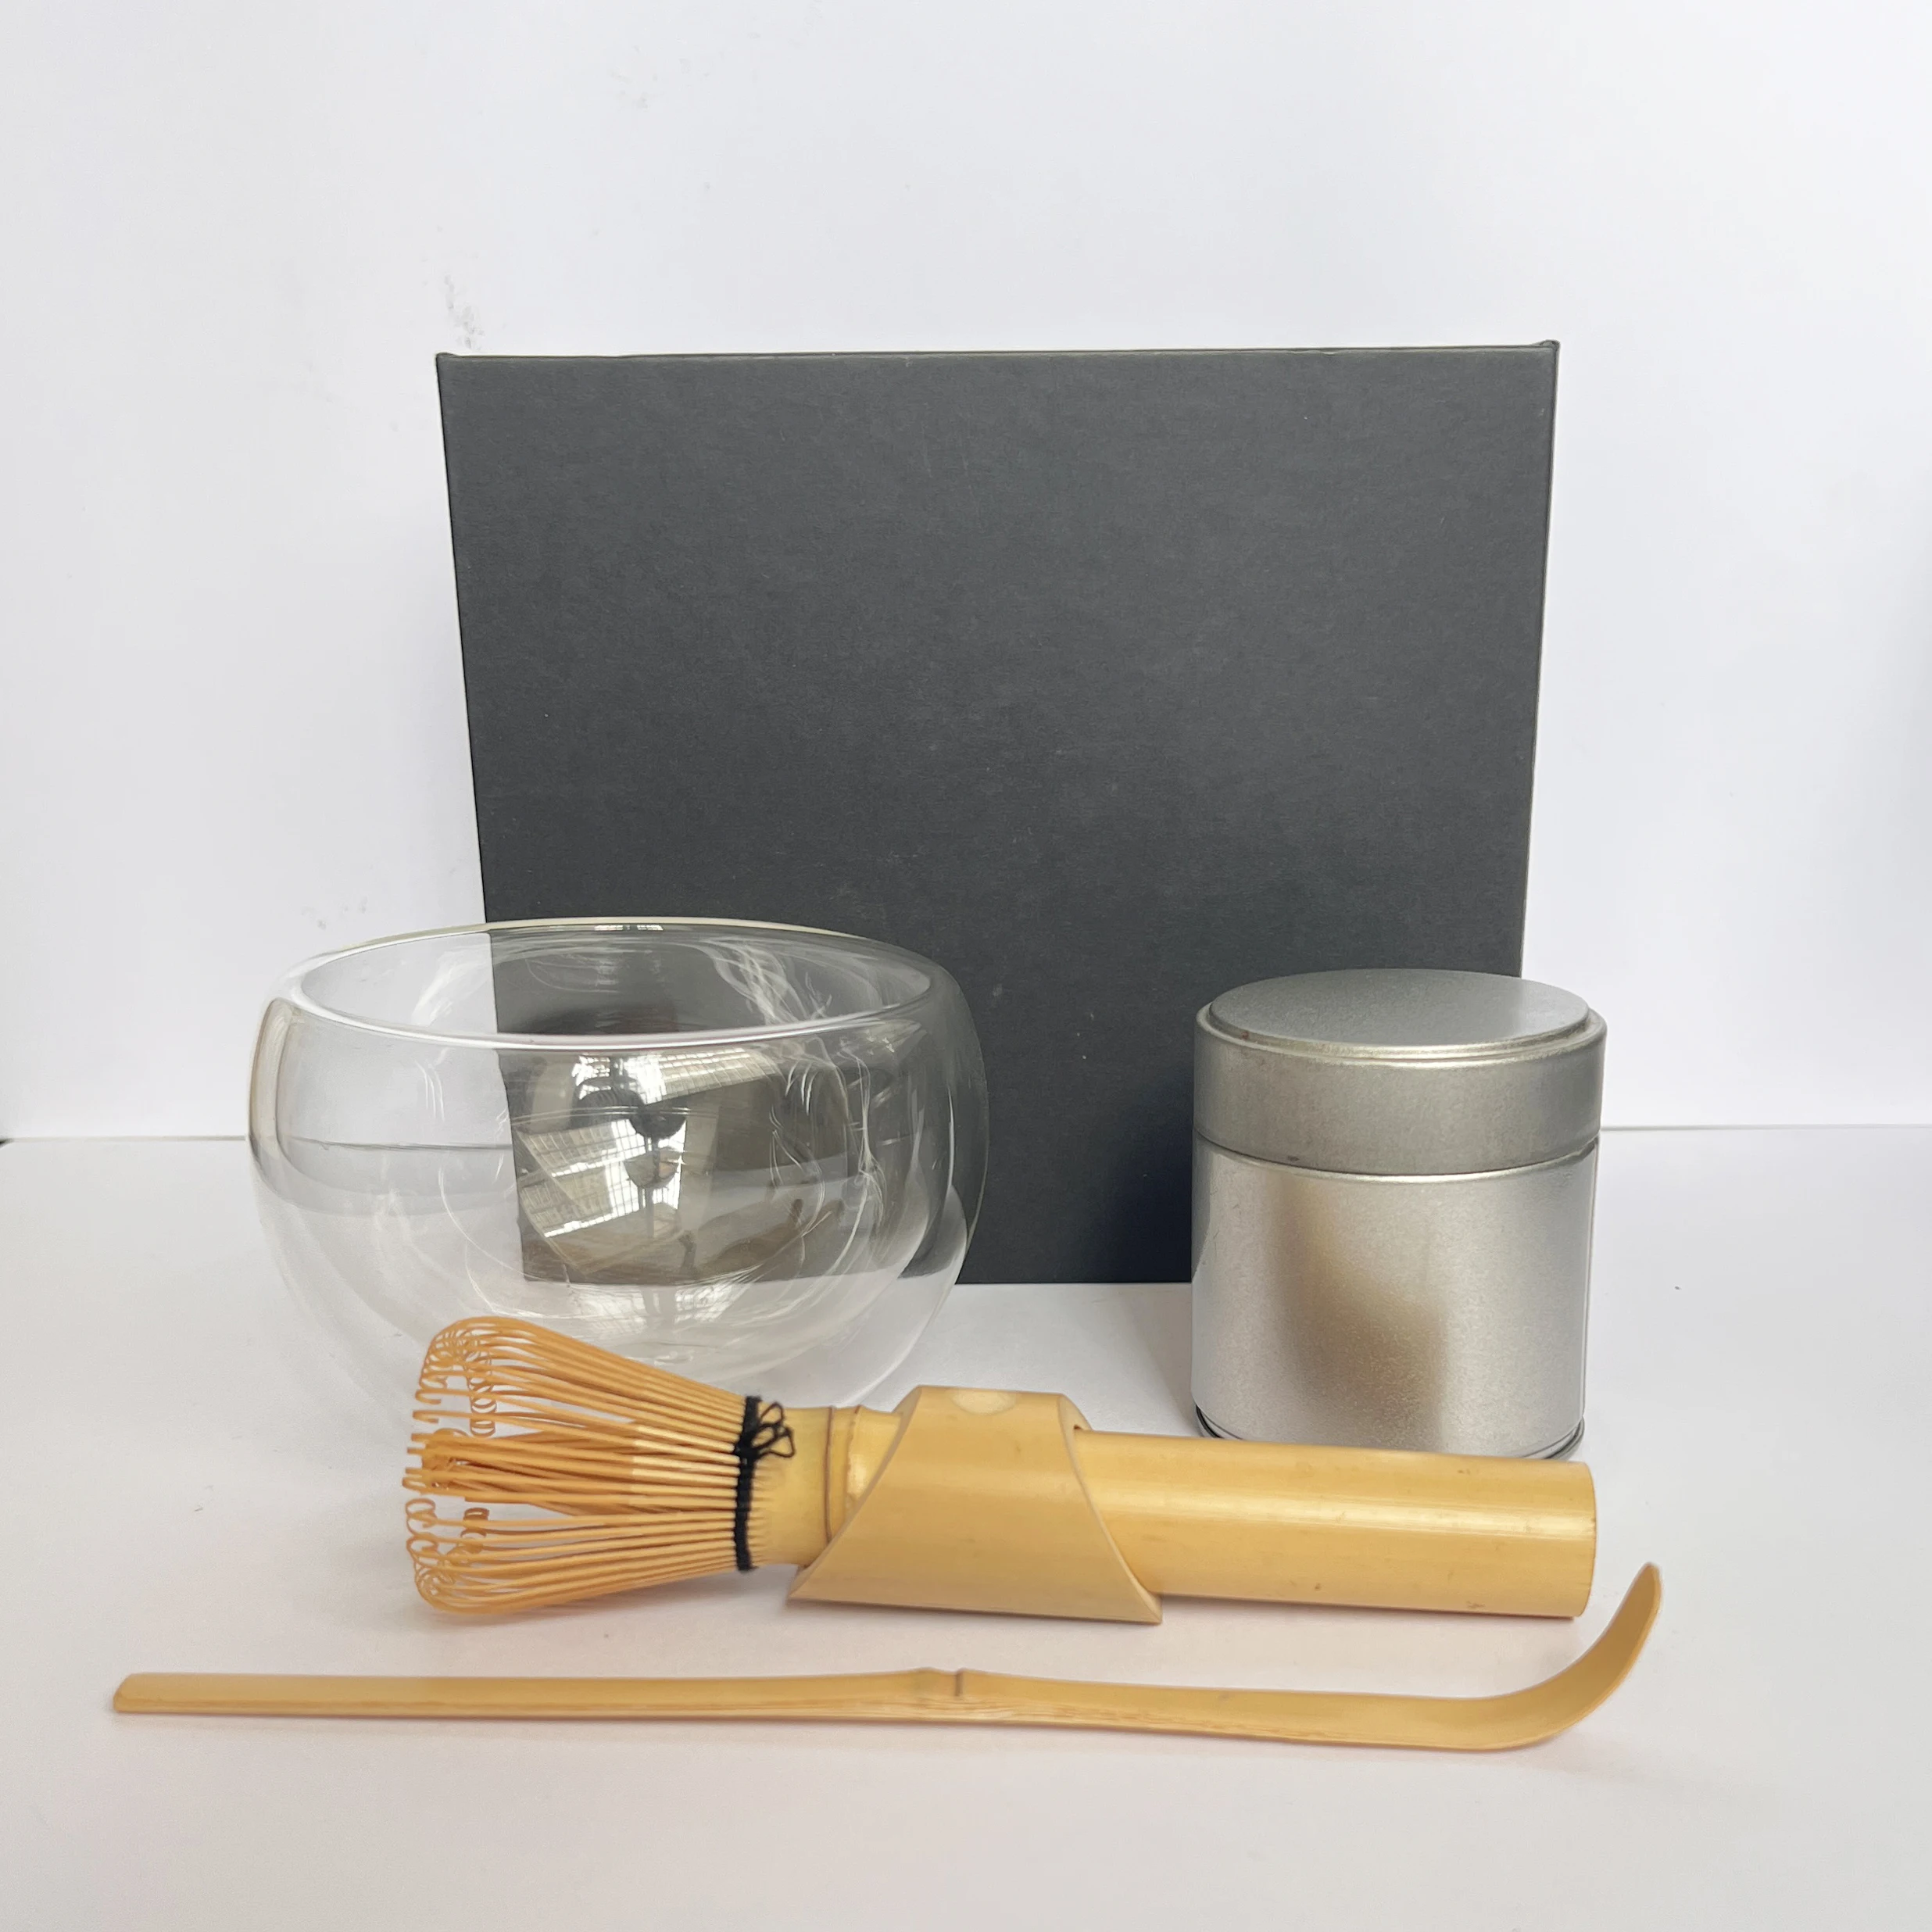 

Matte Black Matcha Chasen Gift Kit Holder Scoop Japanese Ceremonial Giftset Matcha Bowl Whisk Set